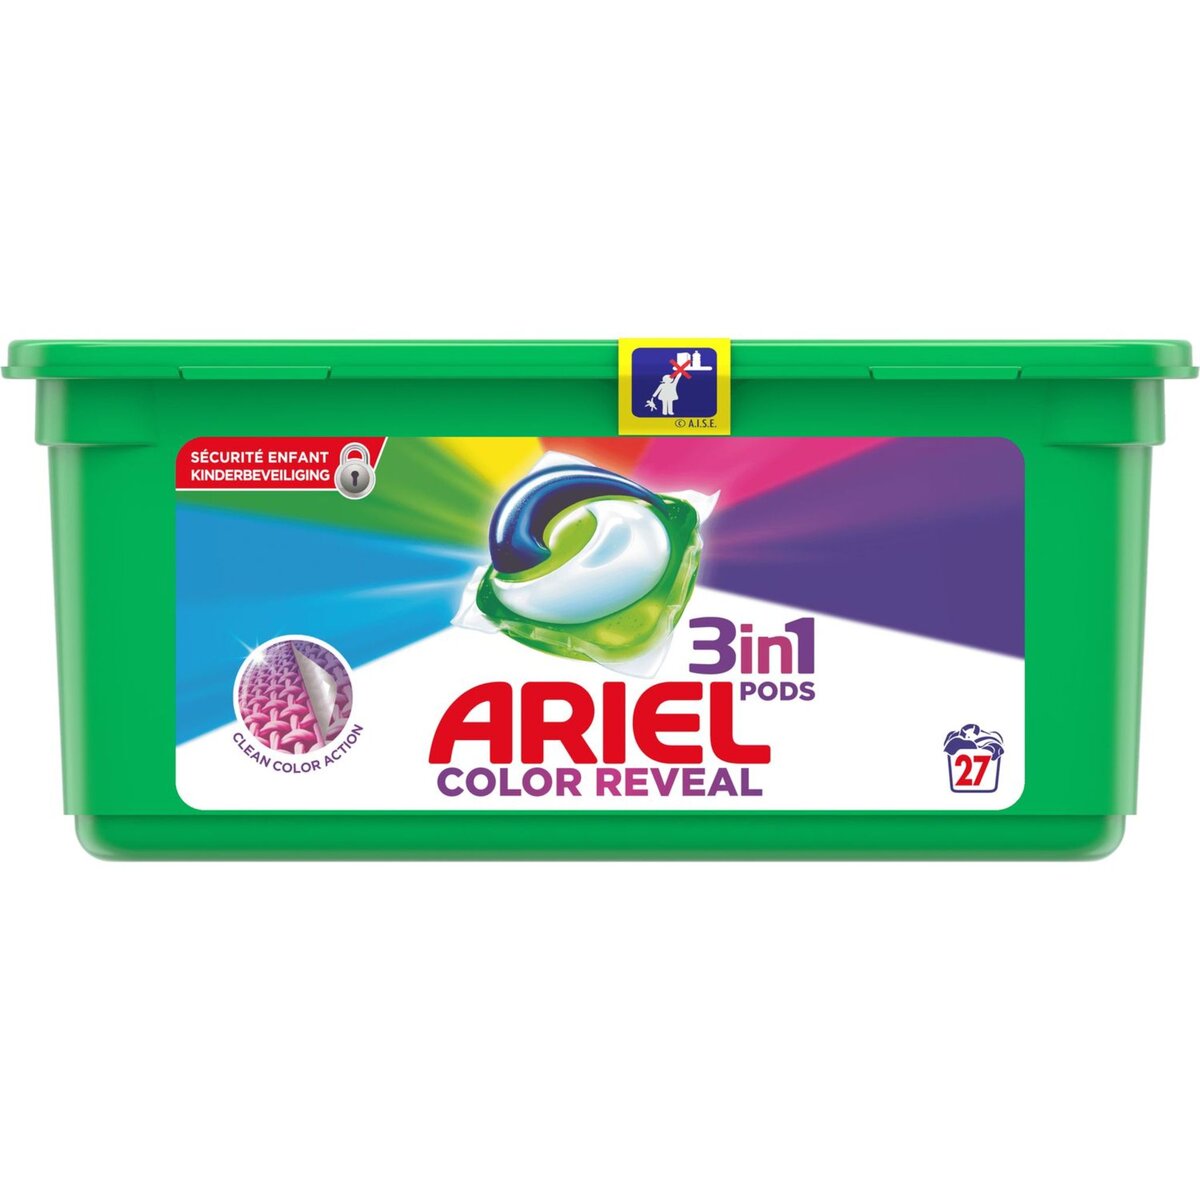 ARIEL Ariel Pods Lessive capsules color reveal 27 lavages 27 lavages 27 capsules